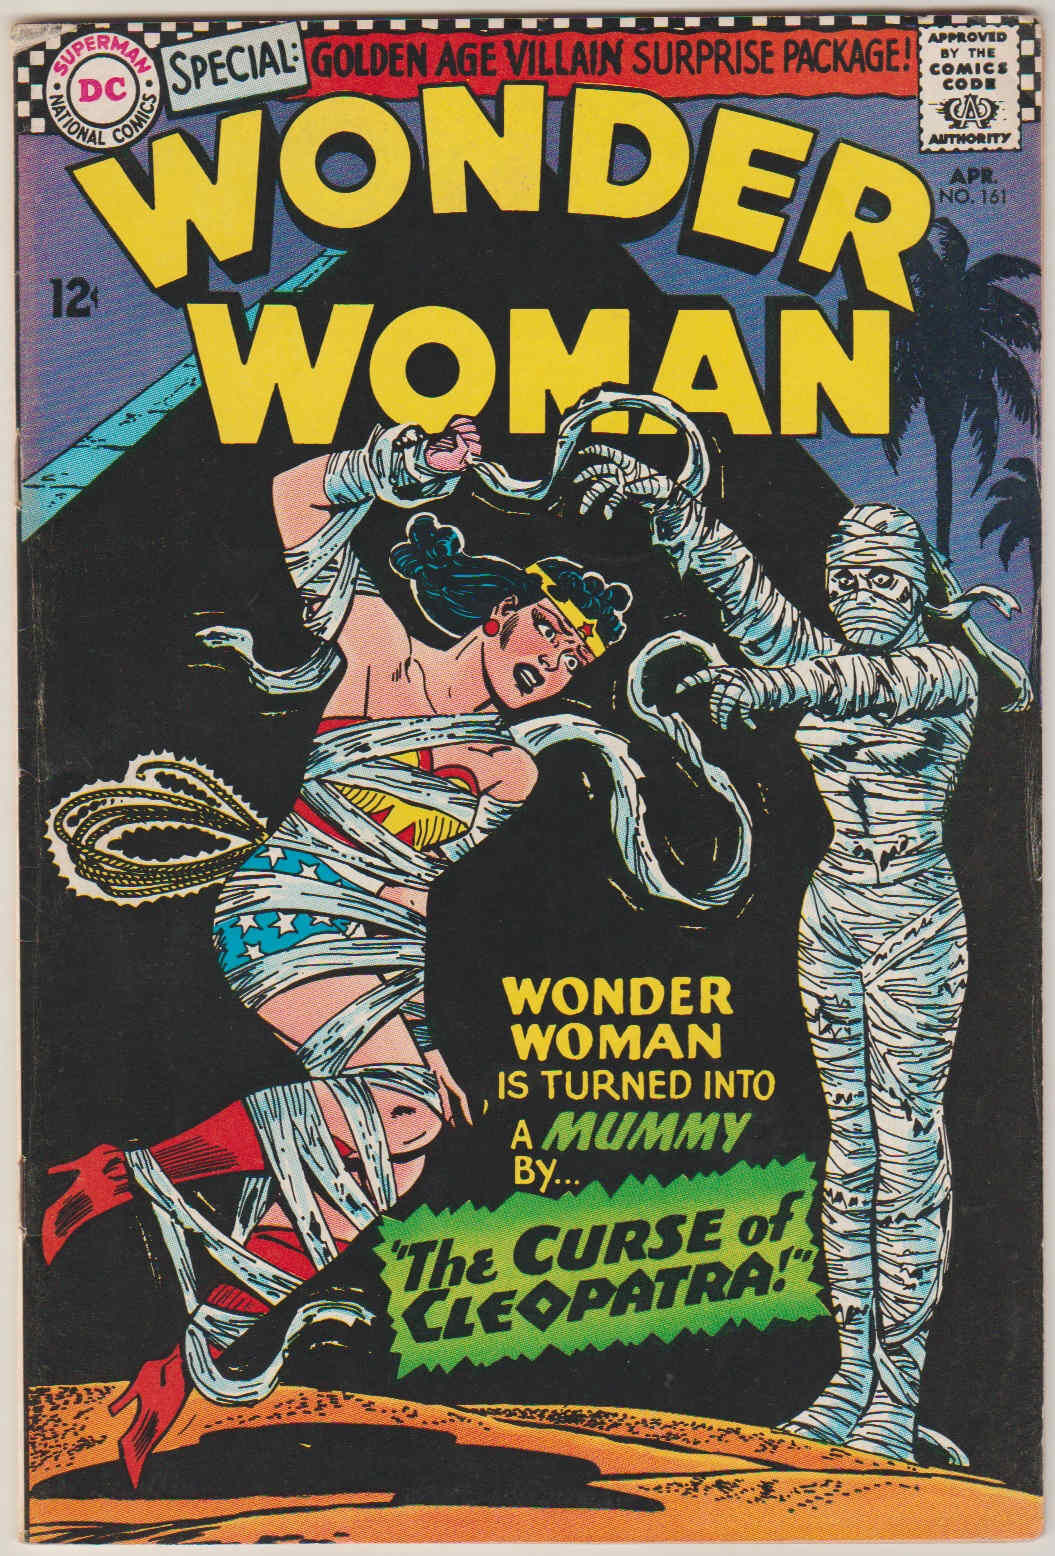 Wonder Woman #161